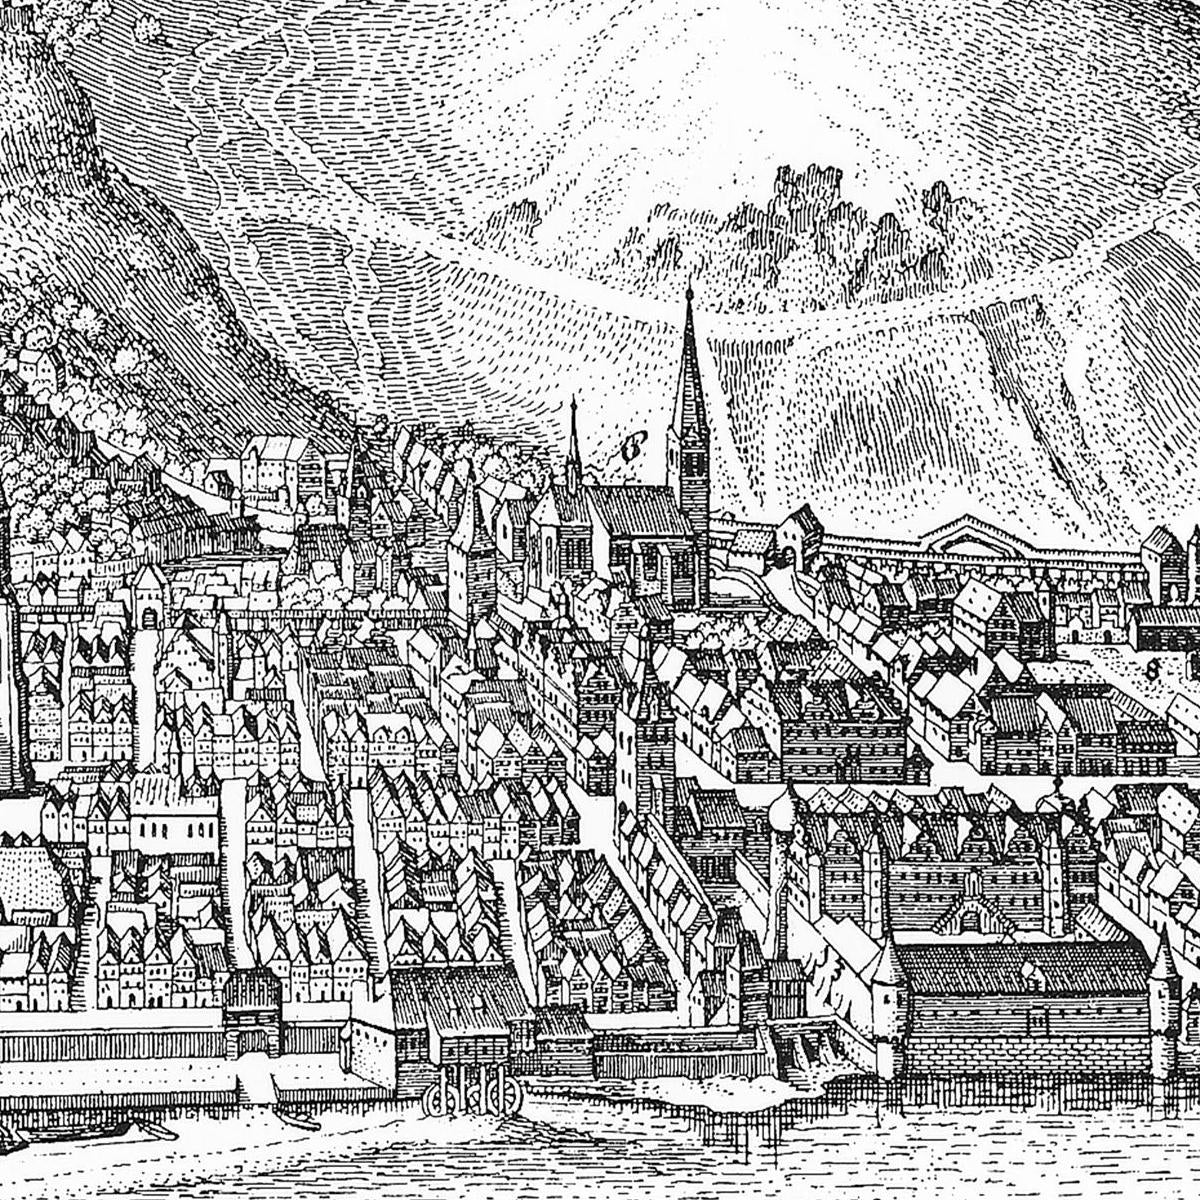 Historische Stadtansicht Heidelberg um 1645